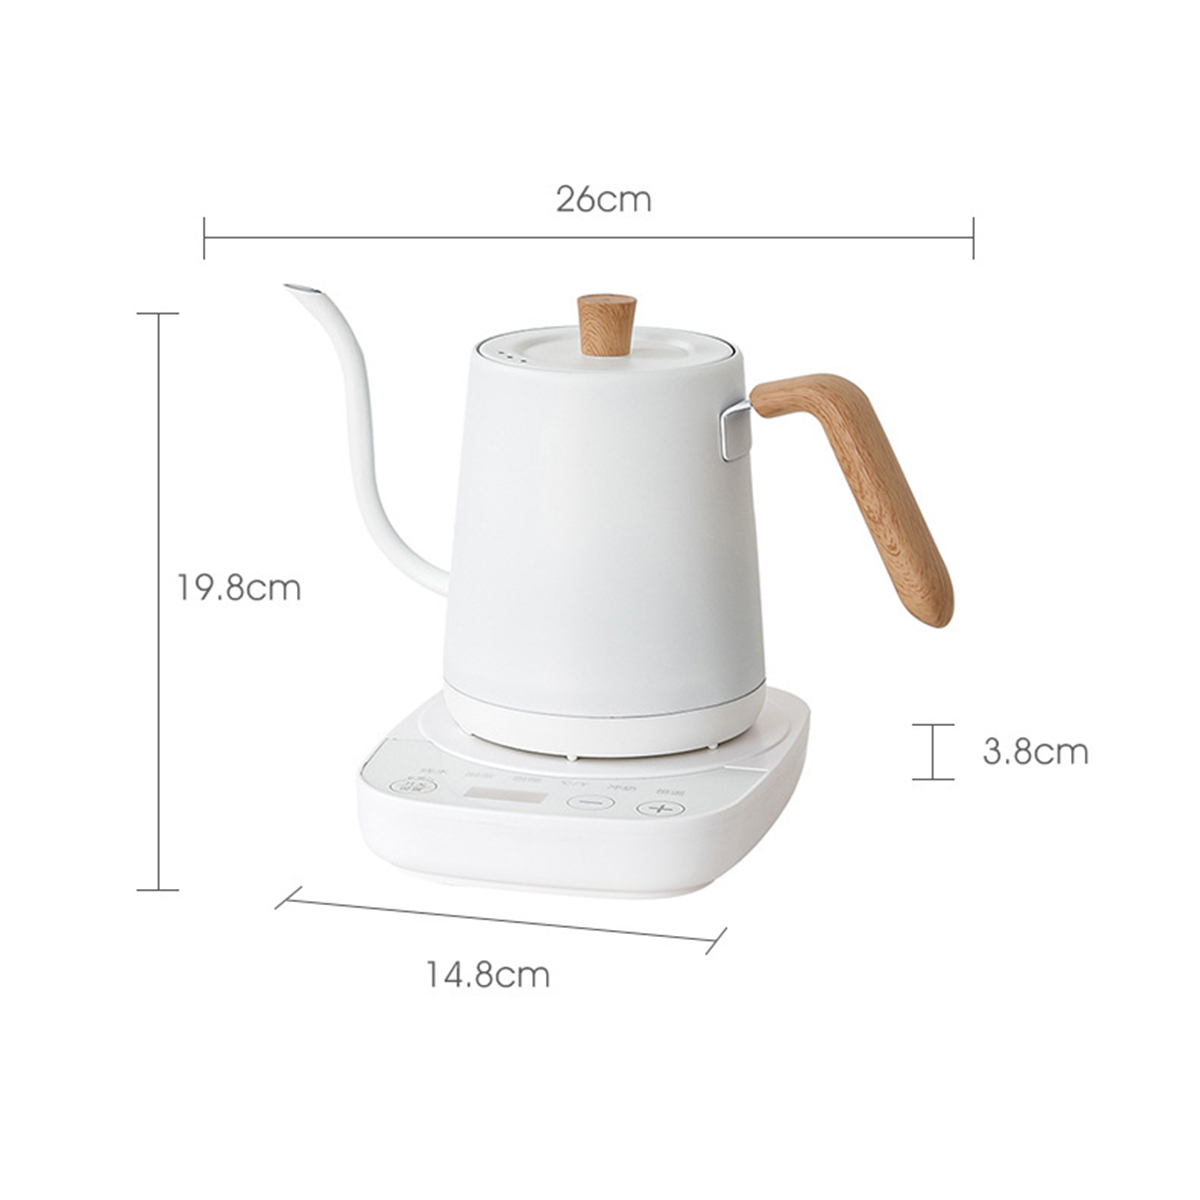 Edelstahl-Wasserkocher BRIGHTAKE Thermostat-Wasserkocher mit mit Temperaturregelung Intelligenter Holzmaserung Wasserkocher, präziser Griff Weiß, -